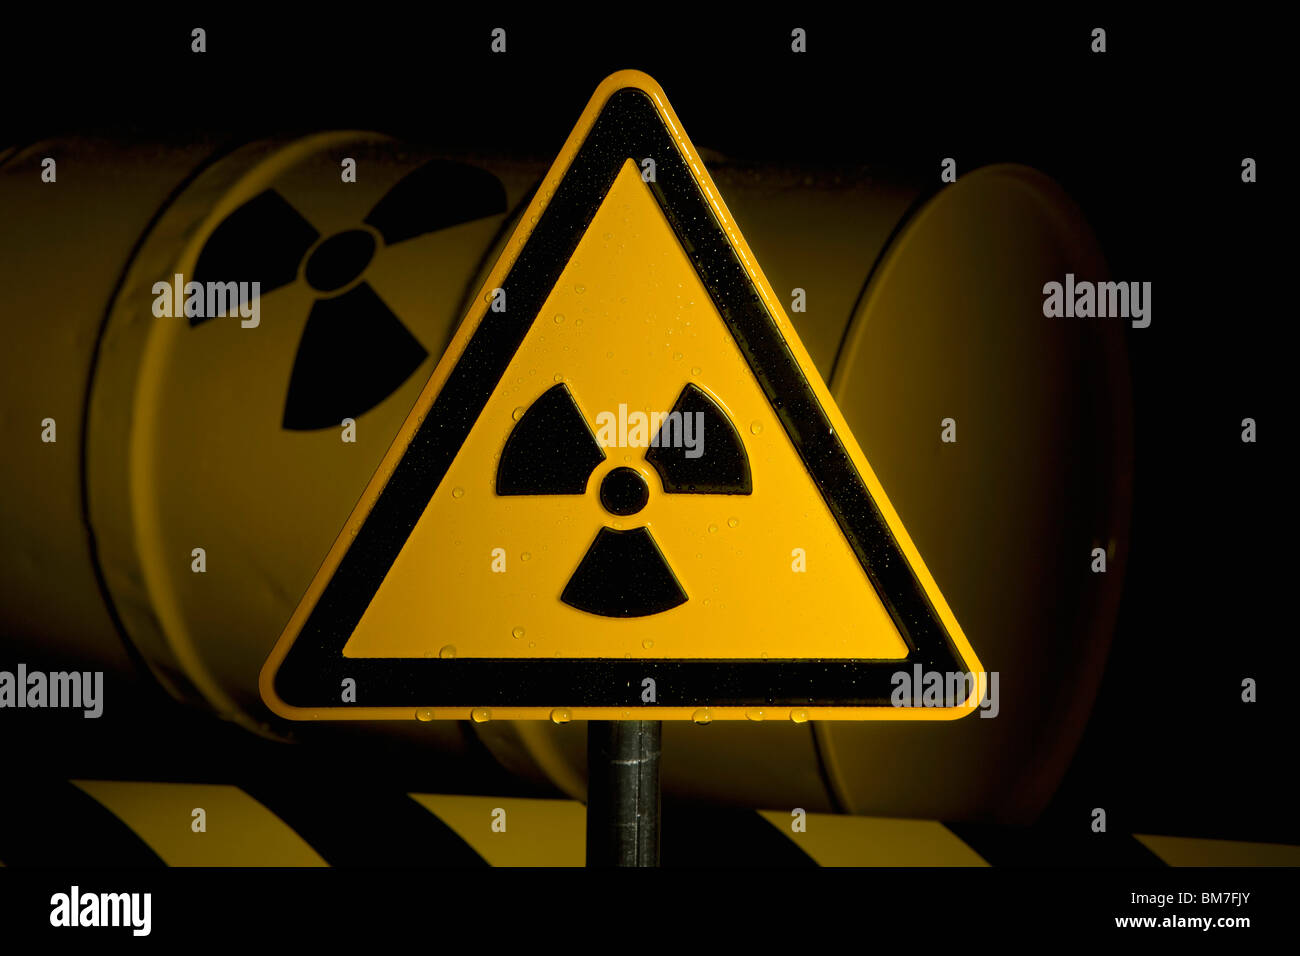 A Radioactive Warning Sign Stock Photo